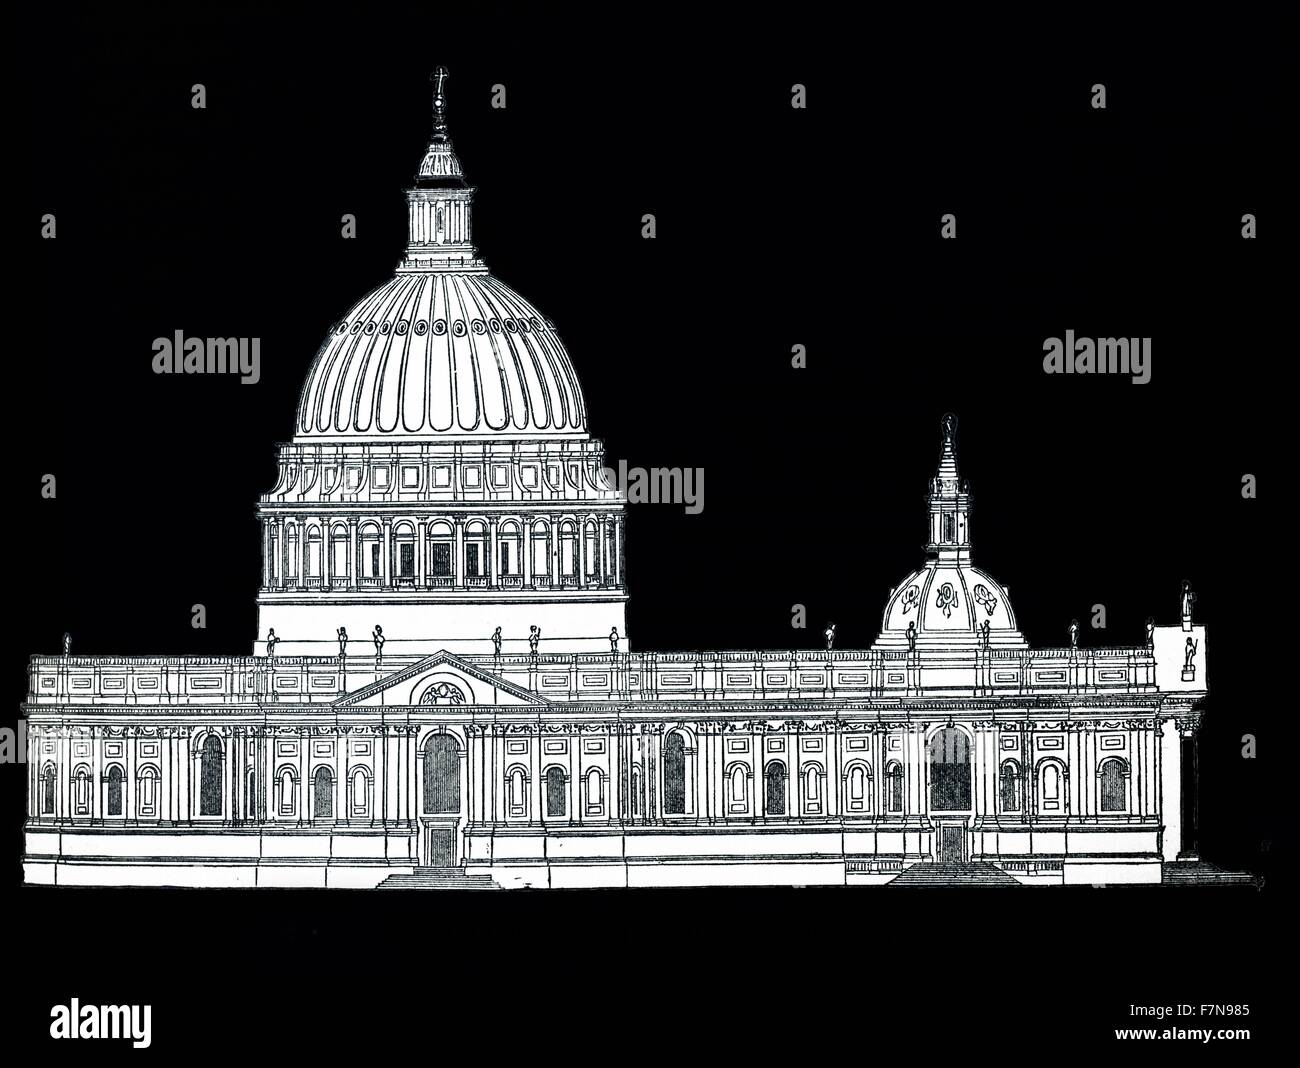 Design originale per la Cattedrale di St Paul e da Sir Christopher Wren (1632-1723) architetto britannico. Risalenti al XVII secolo Foto Stock